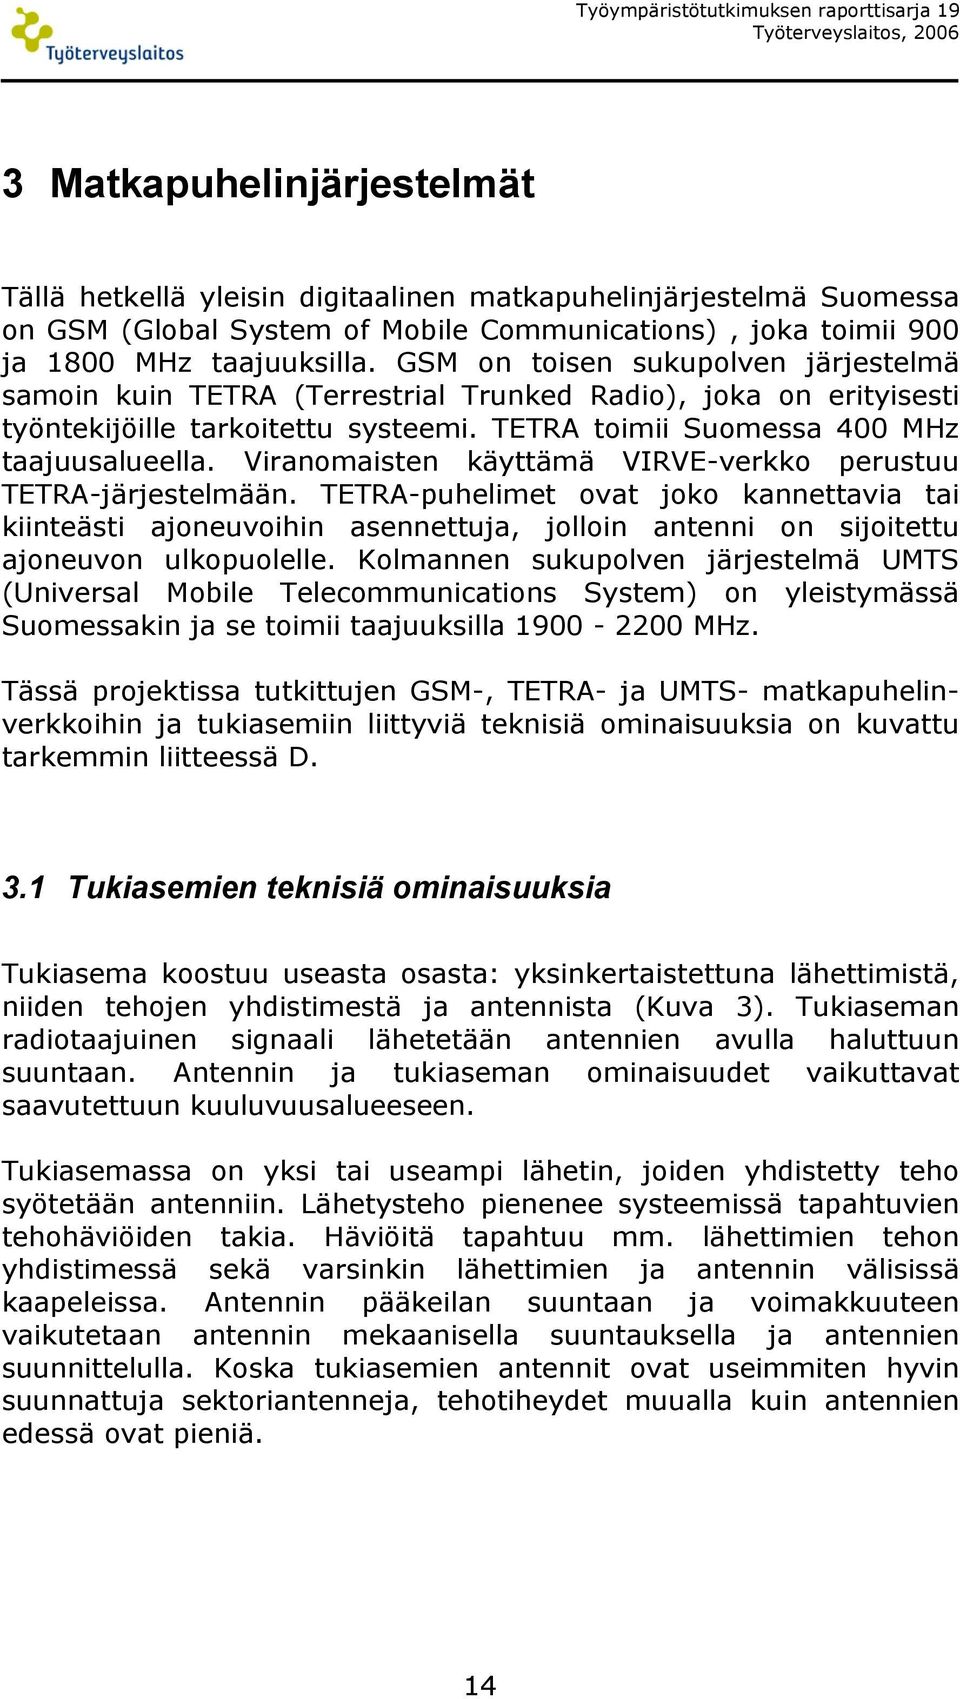 TETRA toimii Suomessa 400 MHz taajuusalueella. Viranomaisten käyttämä VIRVE-verkko perustuu TETRA-järjestelmään.